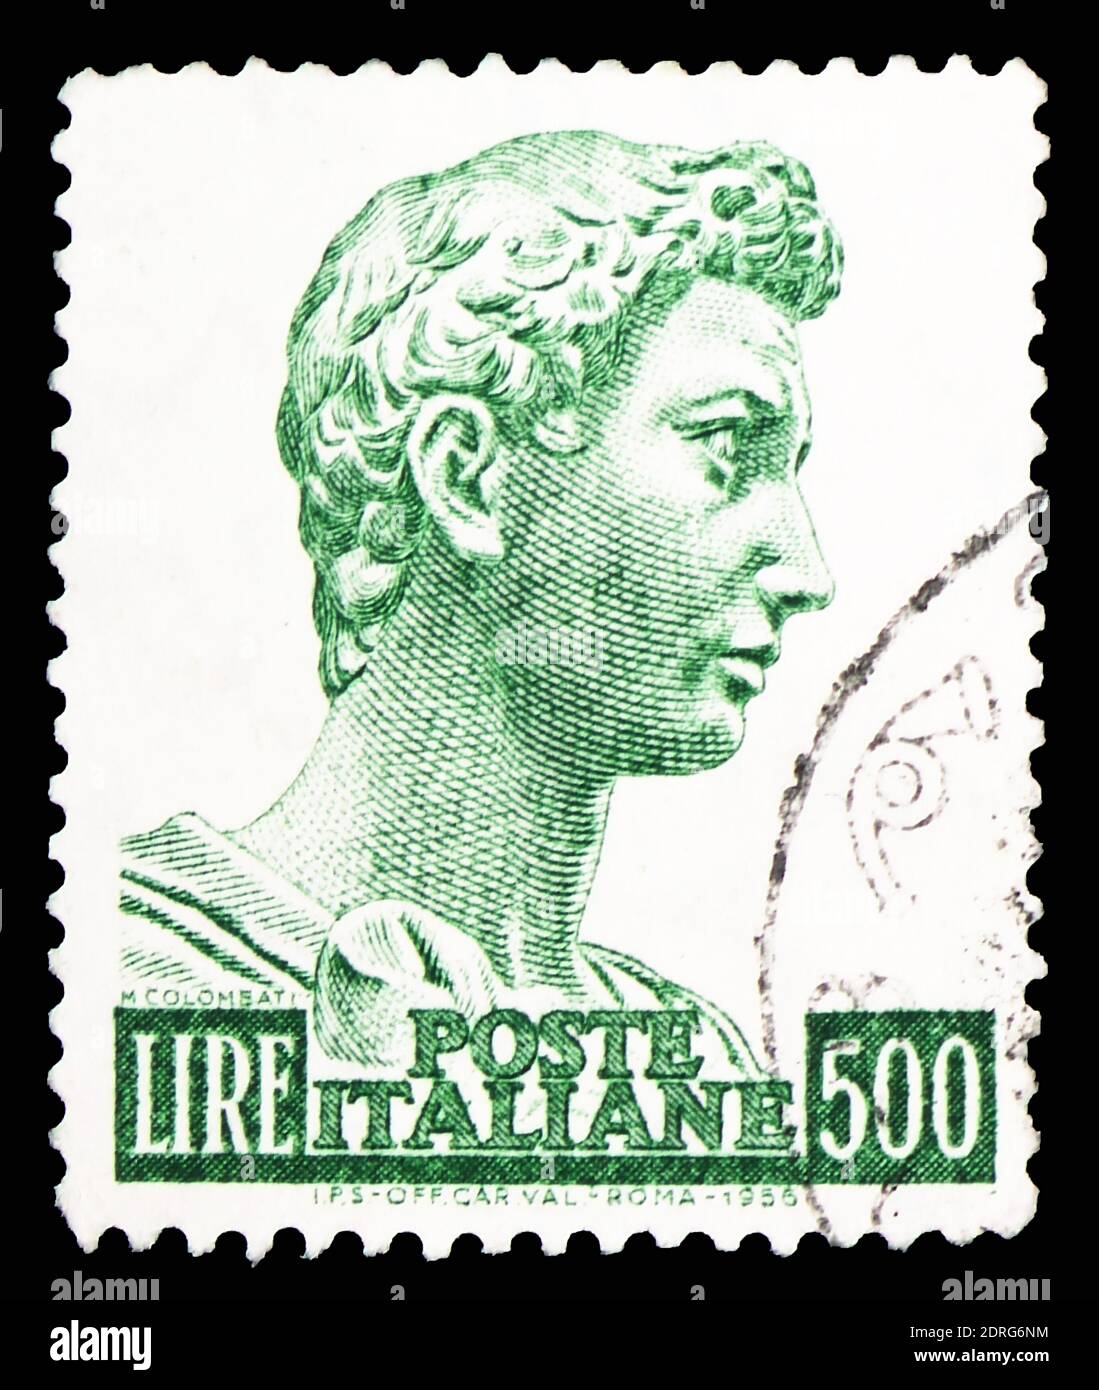 MOSCOU, RUSSIE - 10 FÉVRIER 2019 : un timbre imprimé en Italie montre la tête de la statue de Saint George, série Saint George de Donatello, vers 1969 Banque D'Images